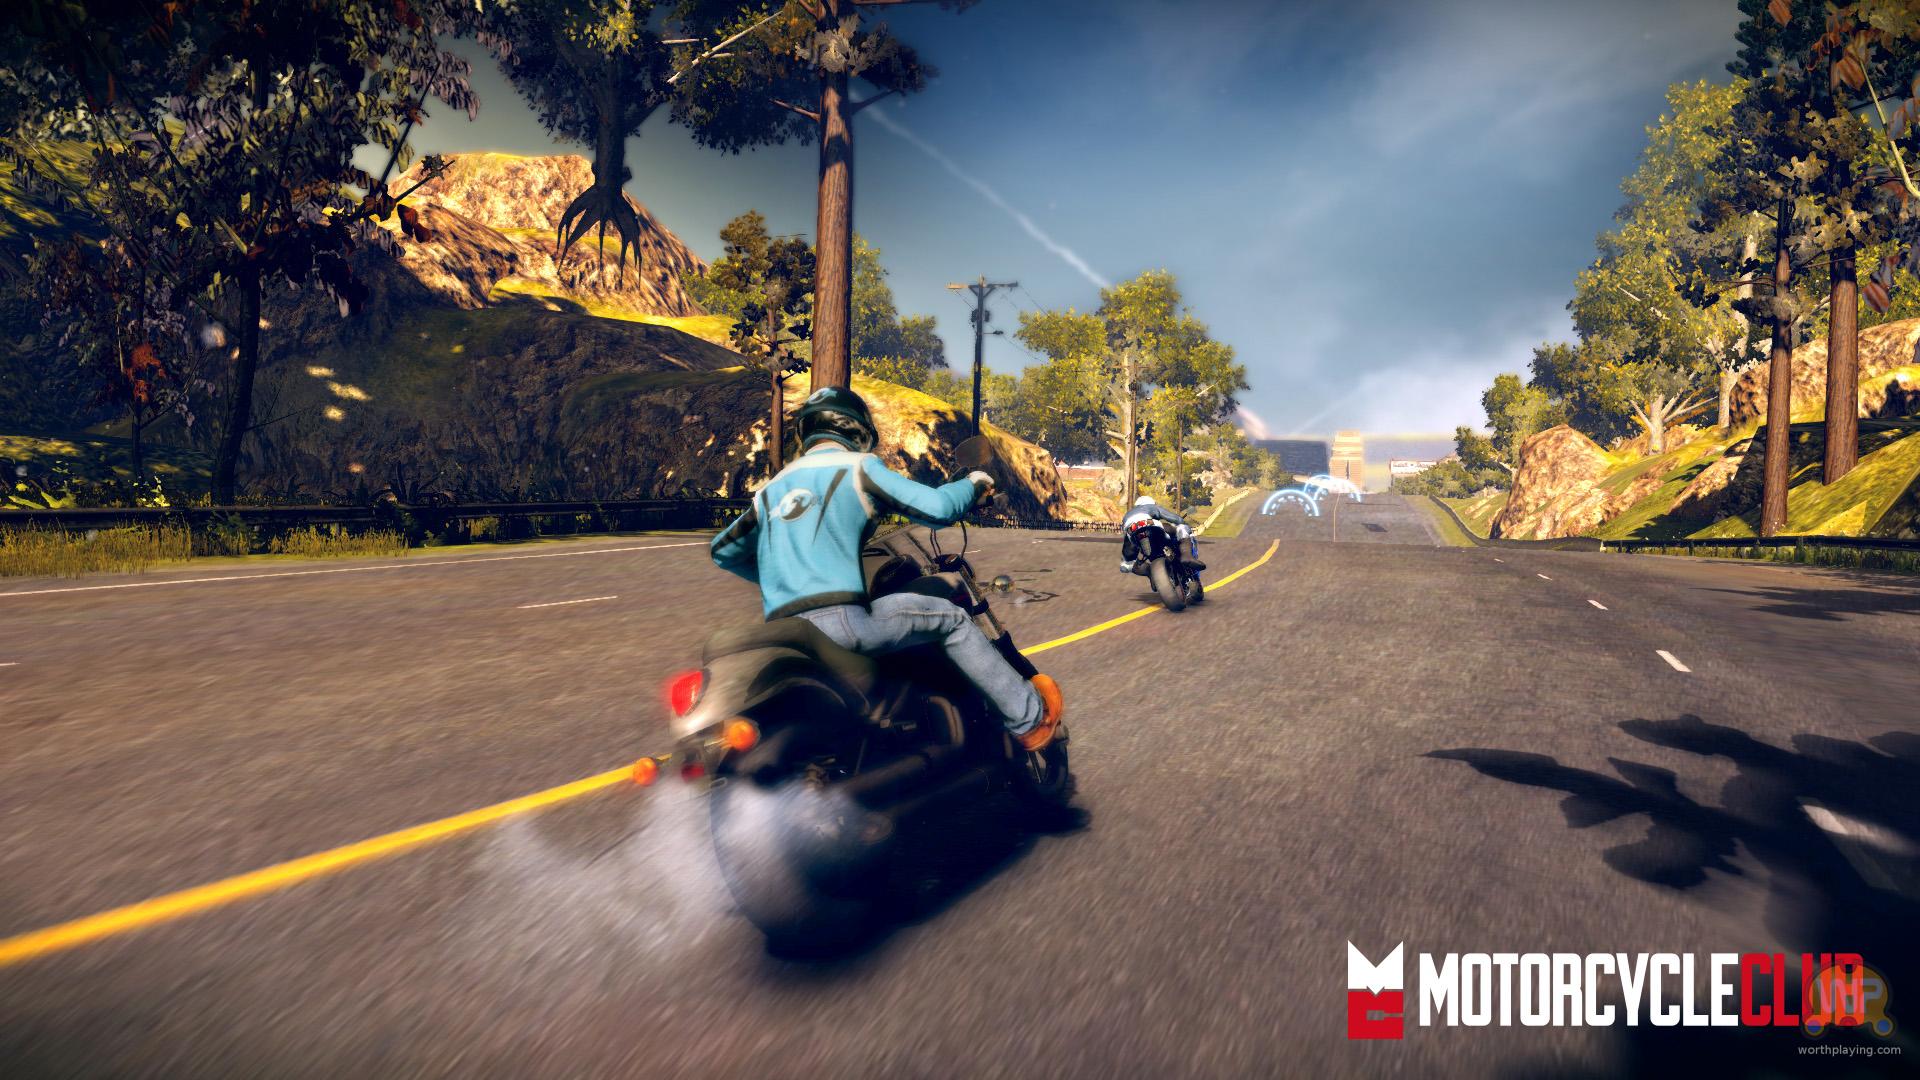 Игра мотоцикл с открытым миром. Игра Motorcycle Club ps3. Motorcycle Club Xbox 360. Гонки на мотоциклах игры. Мотоциклы из игр.